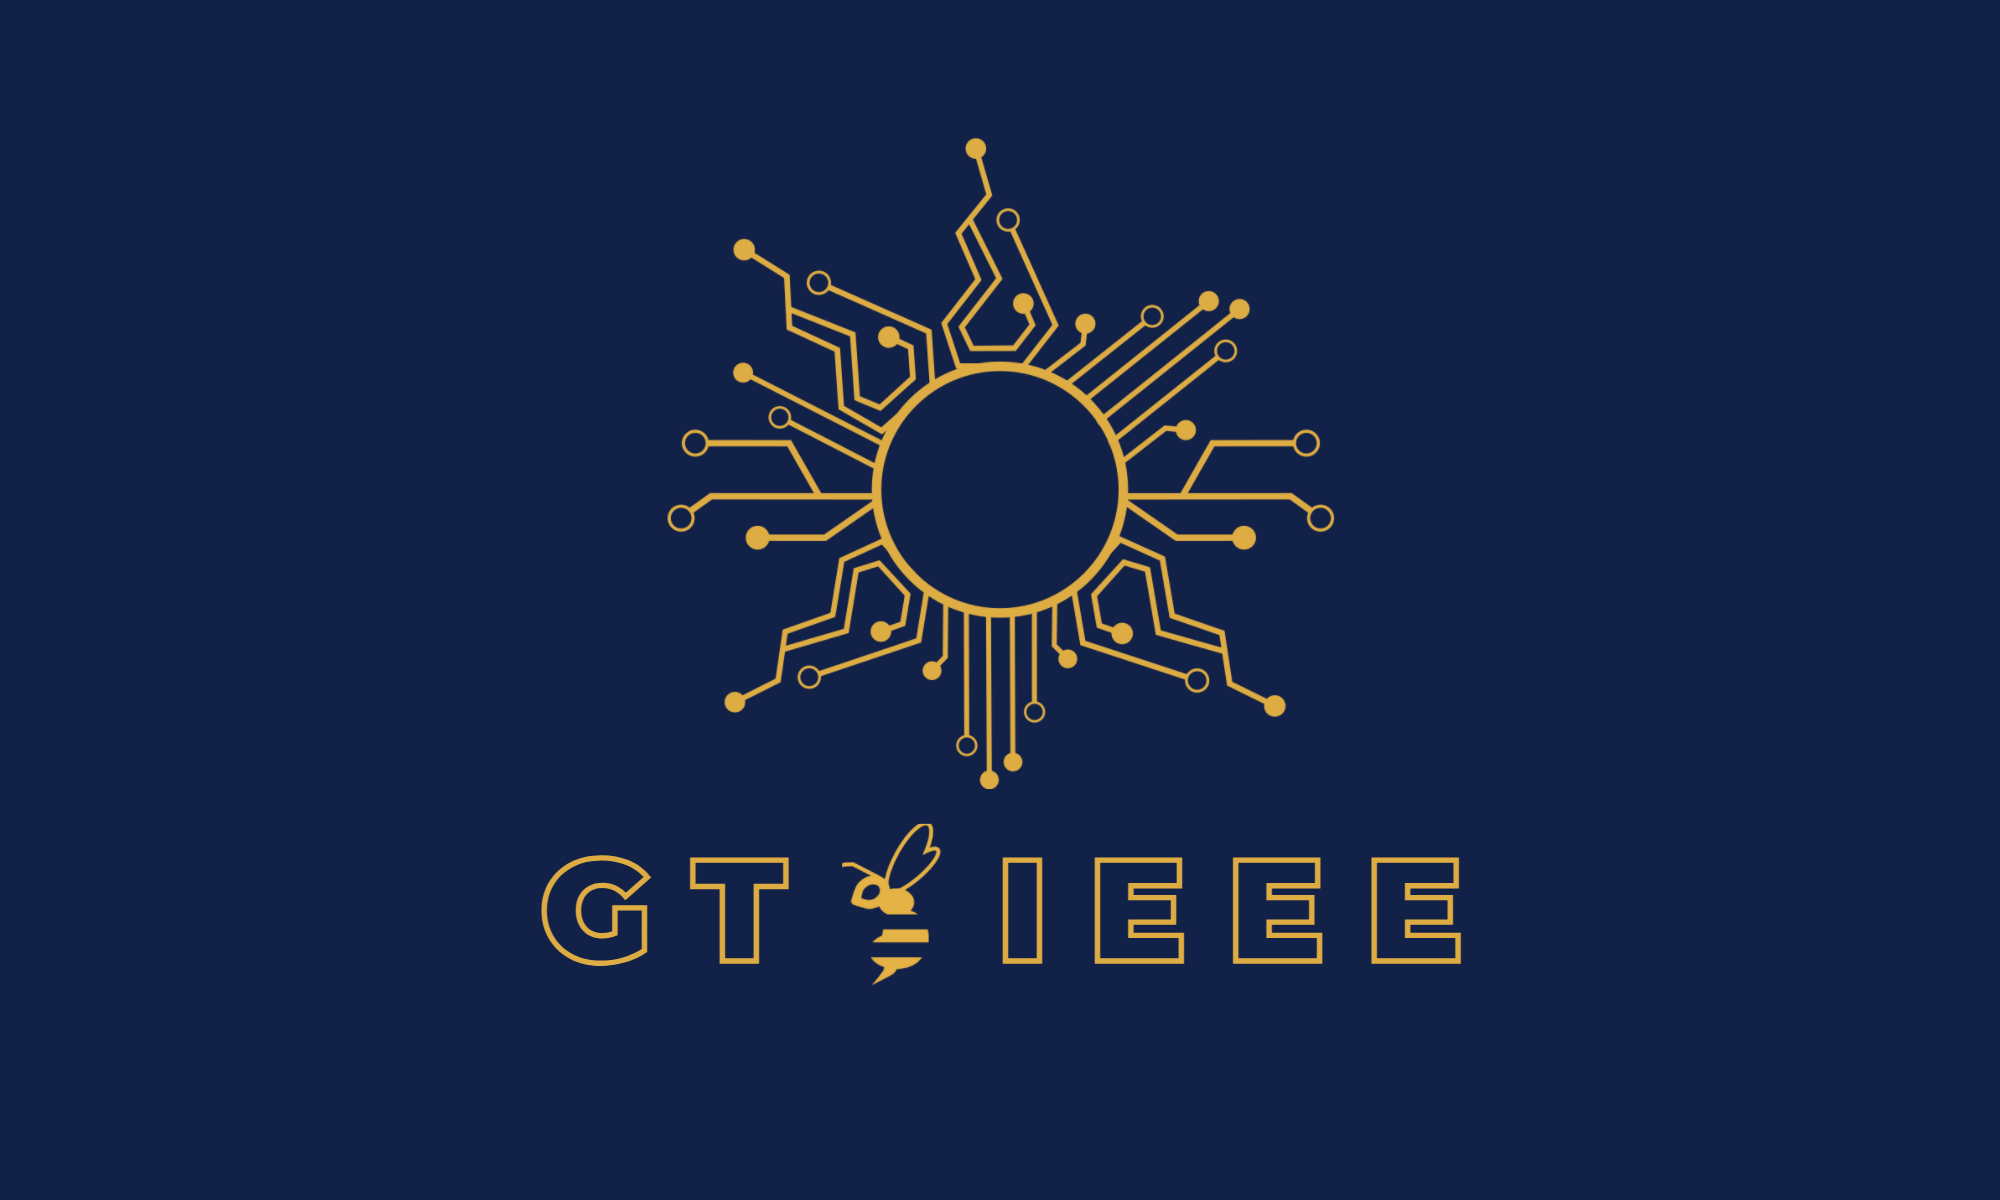 GT IEEE